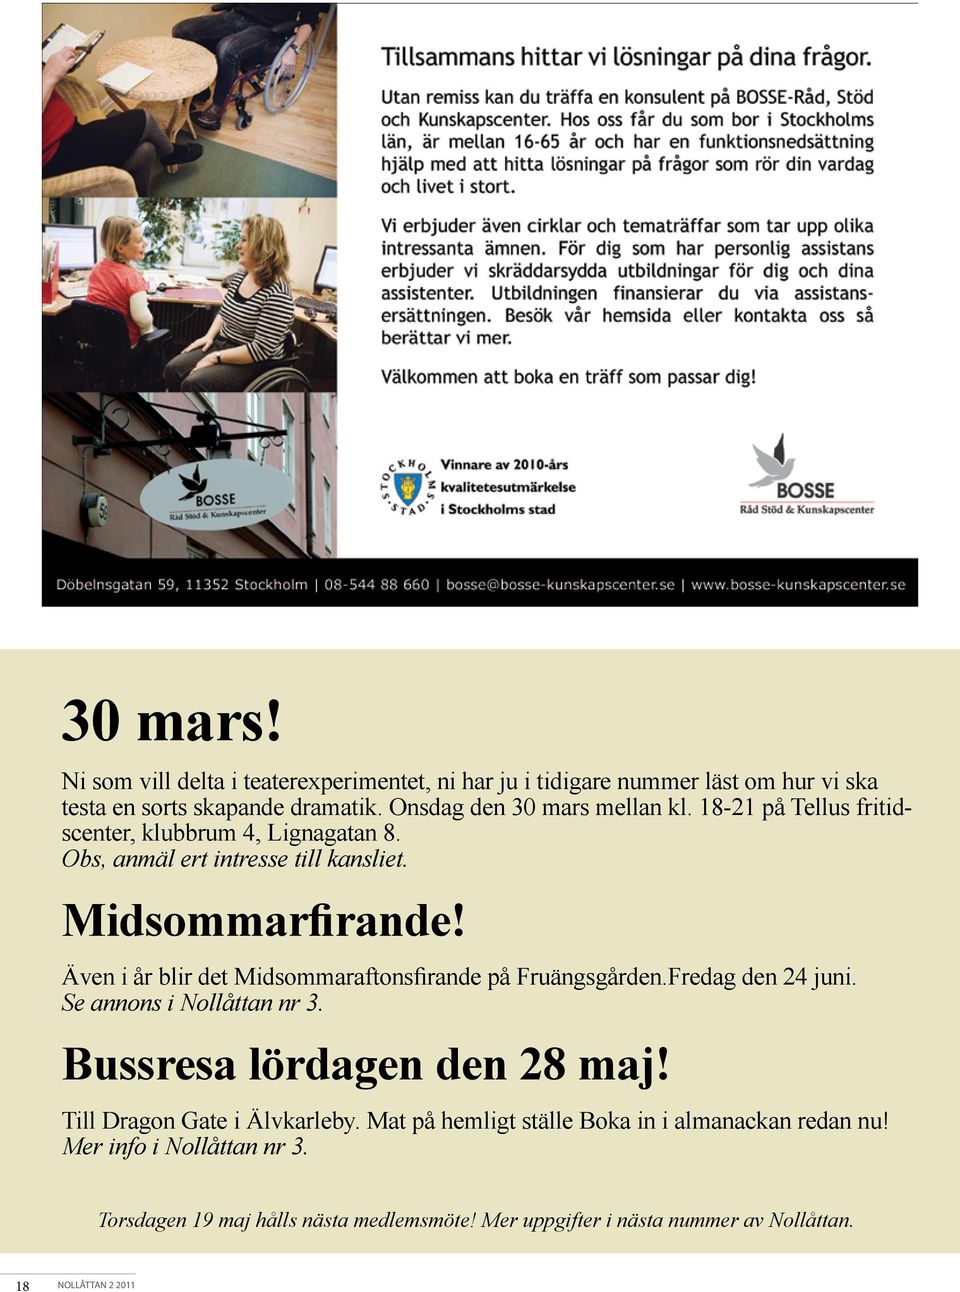 Även i år blir det Midsommaraftonsfirande på Fruängsgården.Fredag den 24 juni. Se annons i Nollåttan nr 3. Bussresa lördagen den 28 maj!